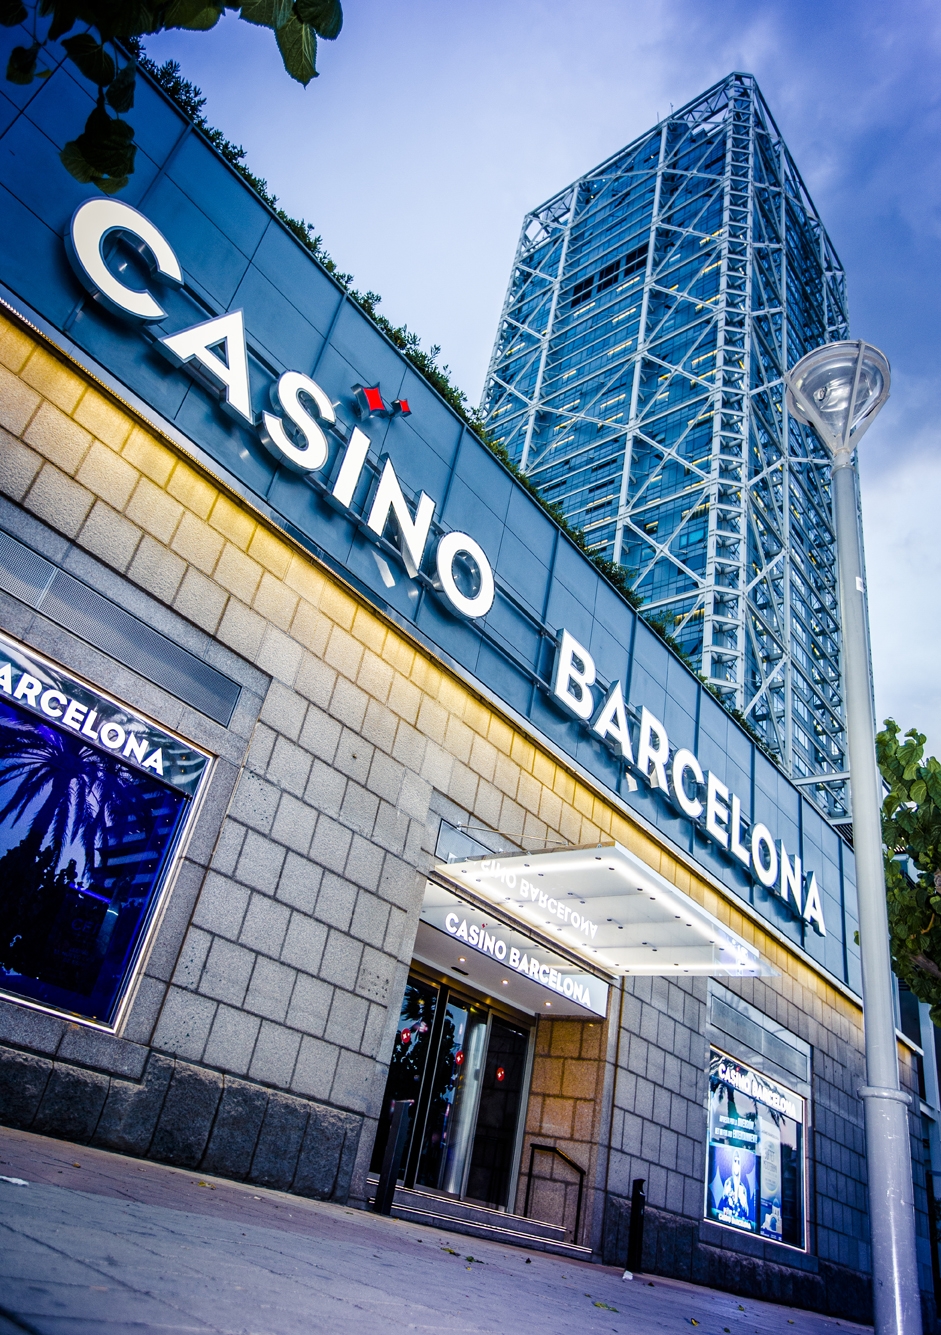 Casino de barcelona online